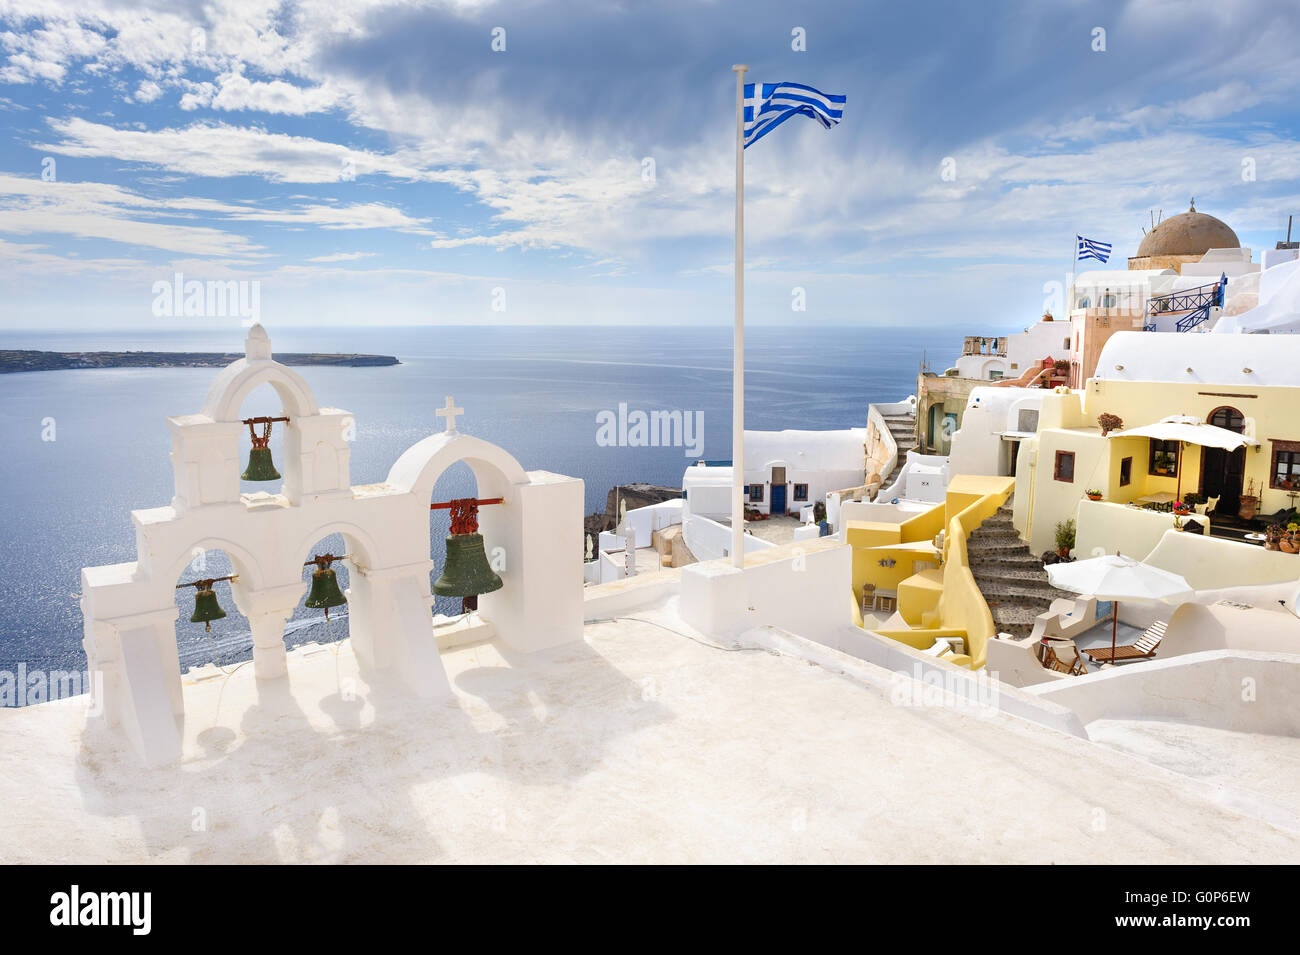 Oia view at Santorini, Greece Stock Photo